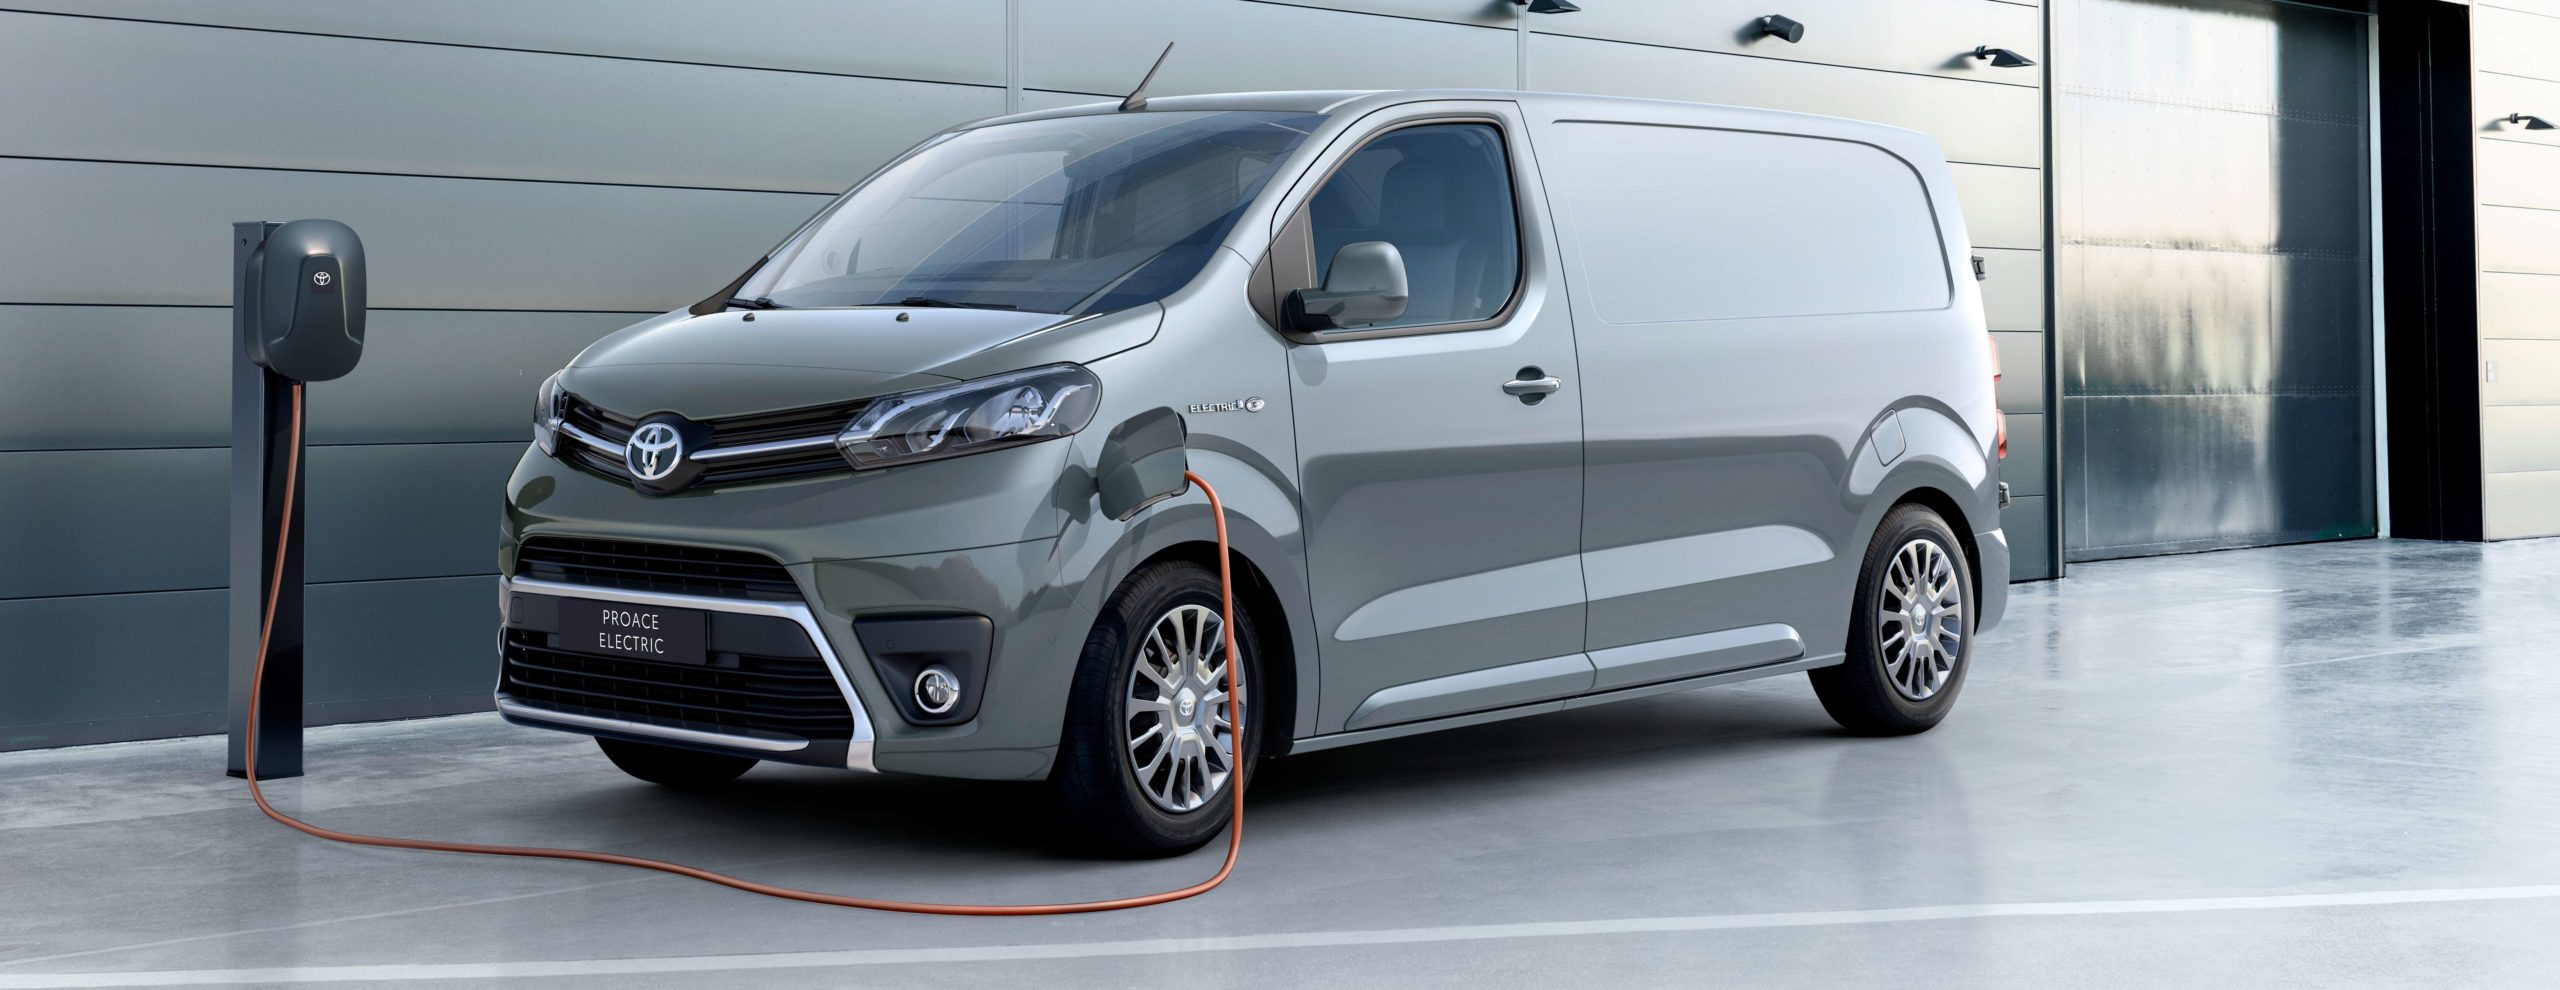 Toyota España comercializa la nueva Toyota Proace Electric Van